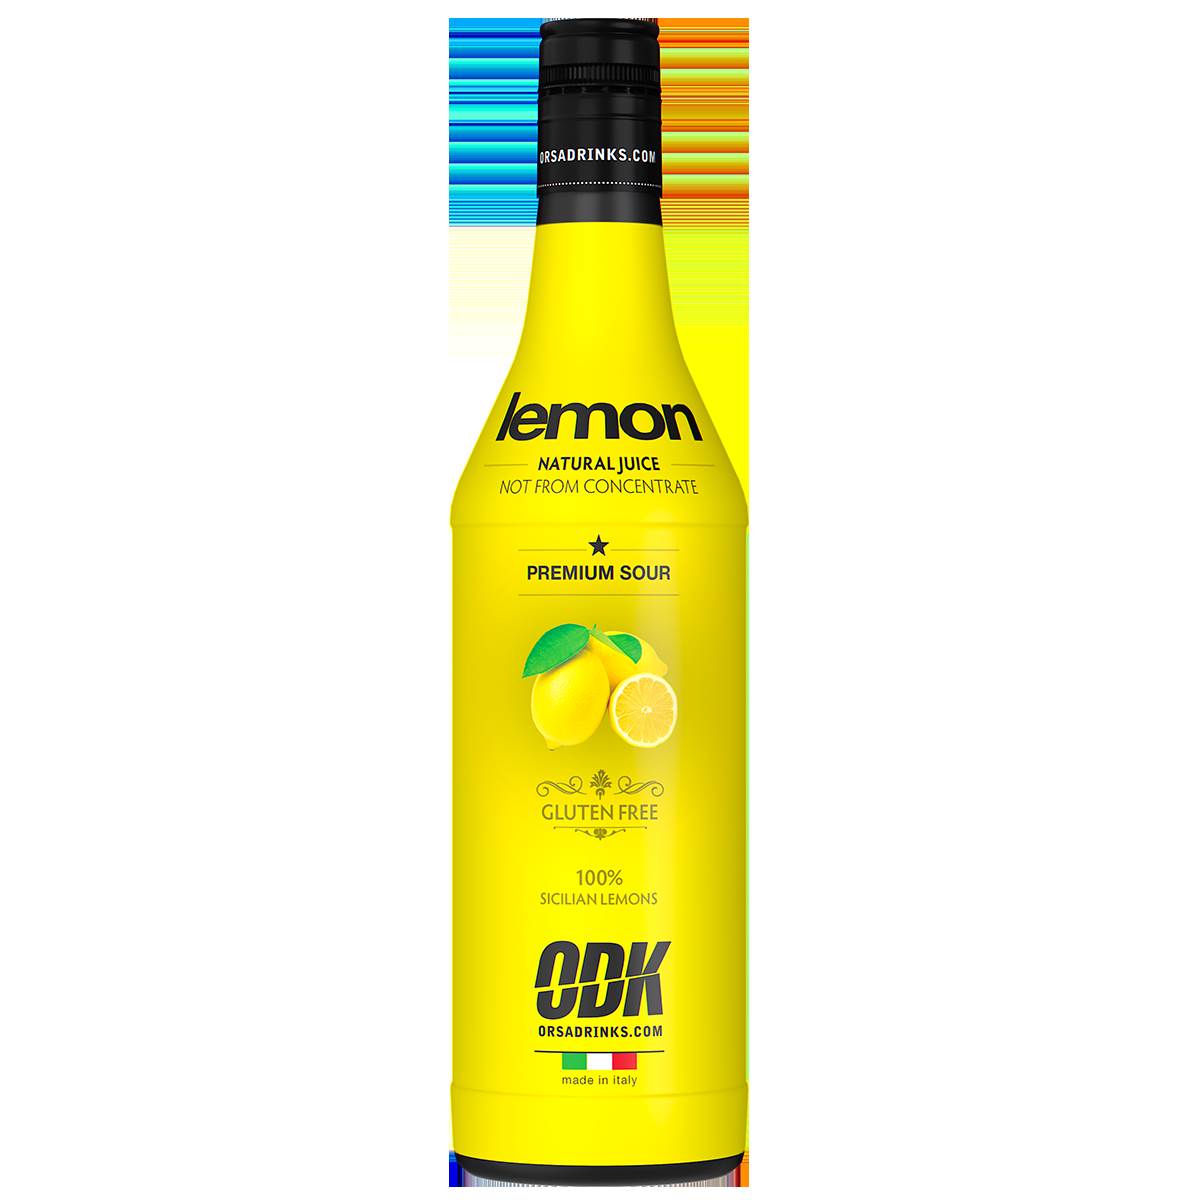 ODK Lemon Juice 750ml